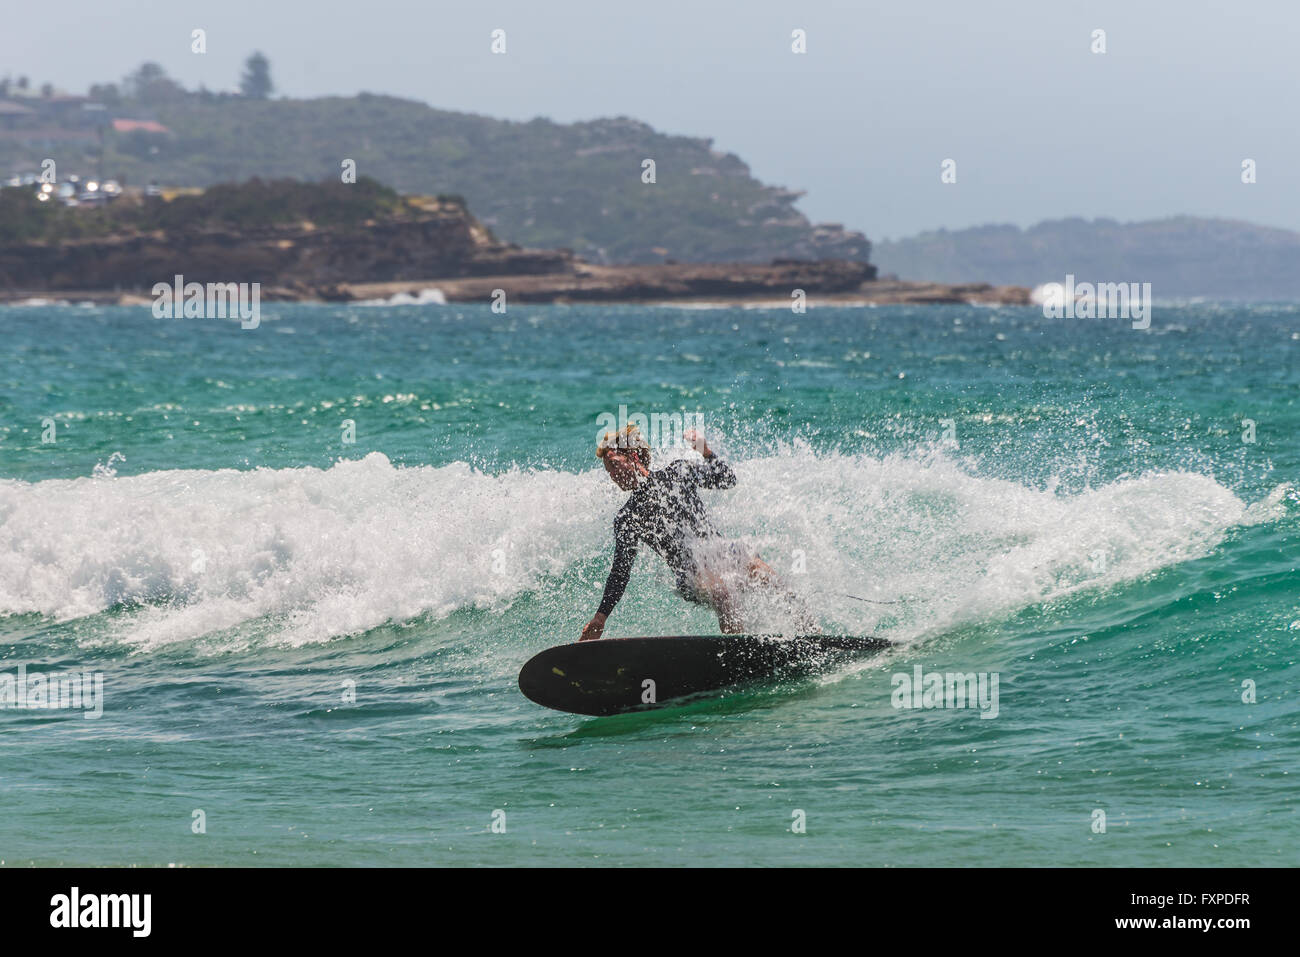 Eine australische Surfer auf der Welle. Sieben Meilen vom Zentrum von Sydney, berühmten Manly beach Stockfoto